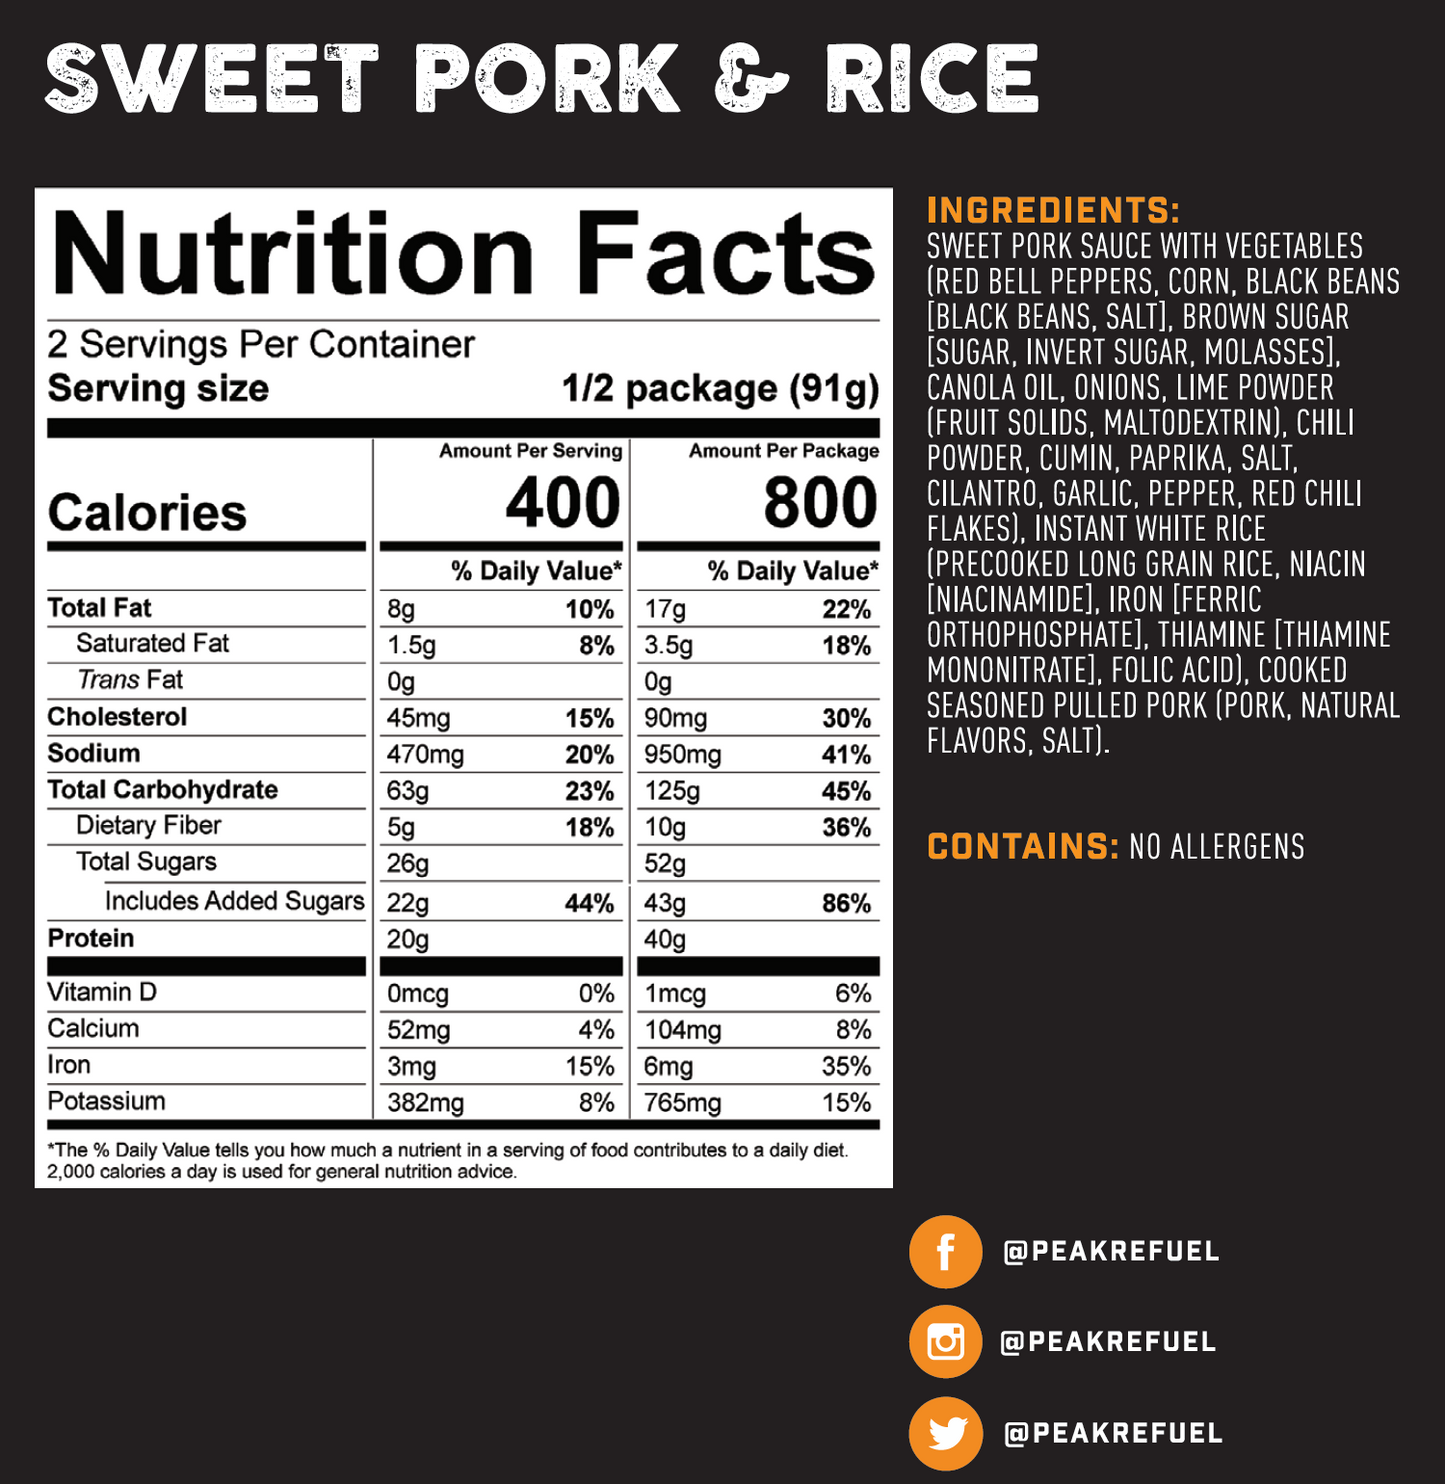 Sweet Pork & Rice by Peak Refuel